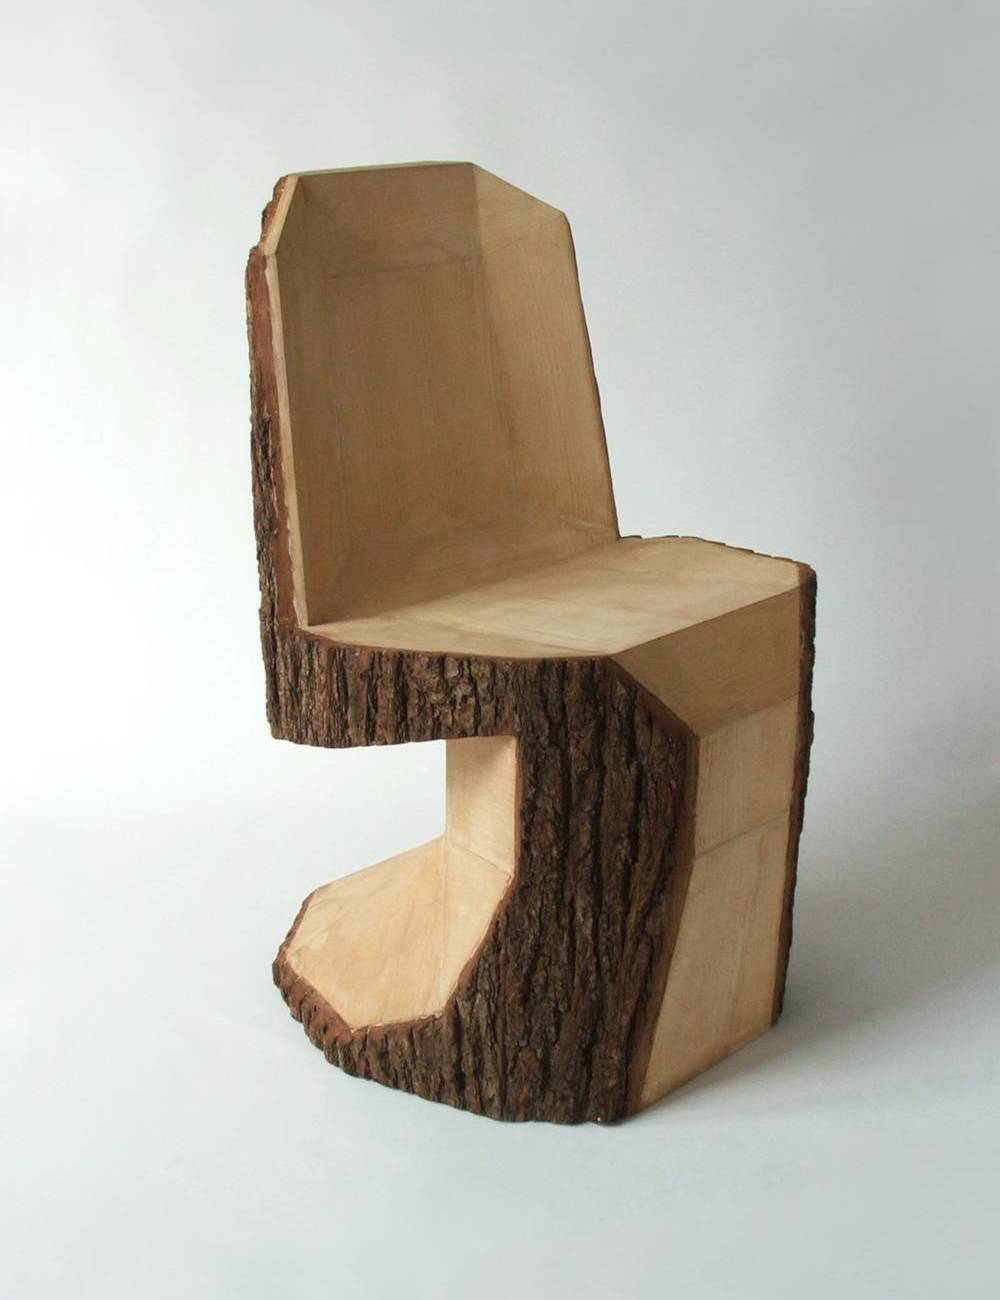 Panton diy chair